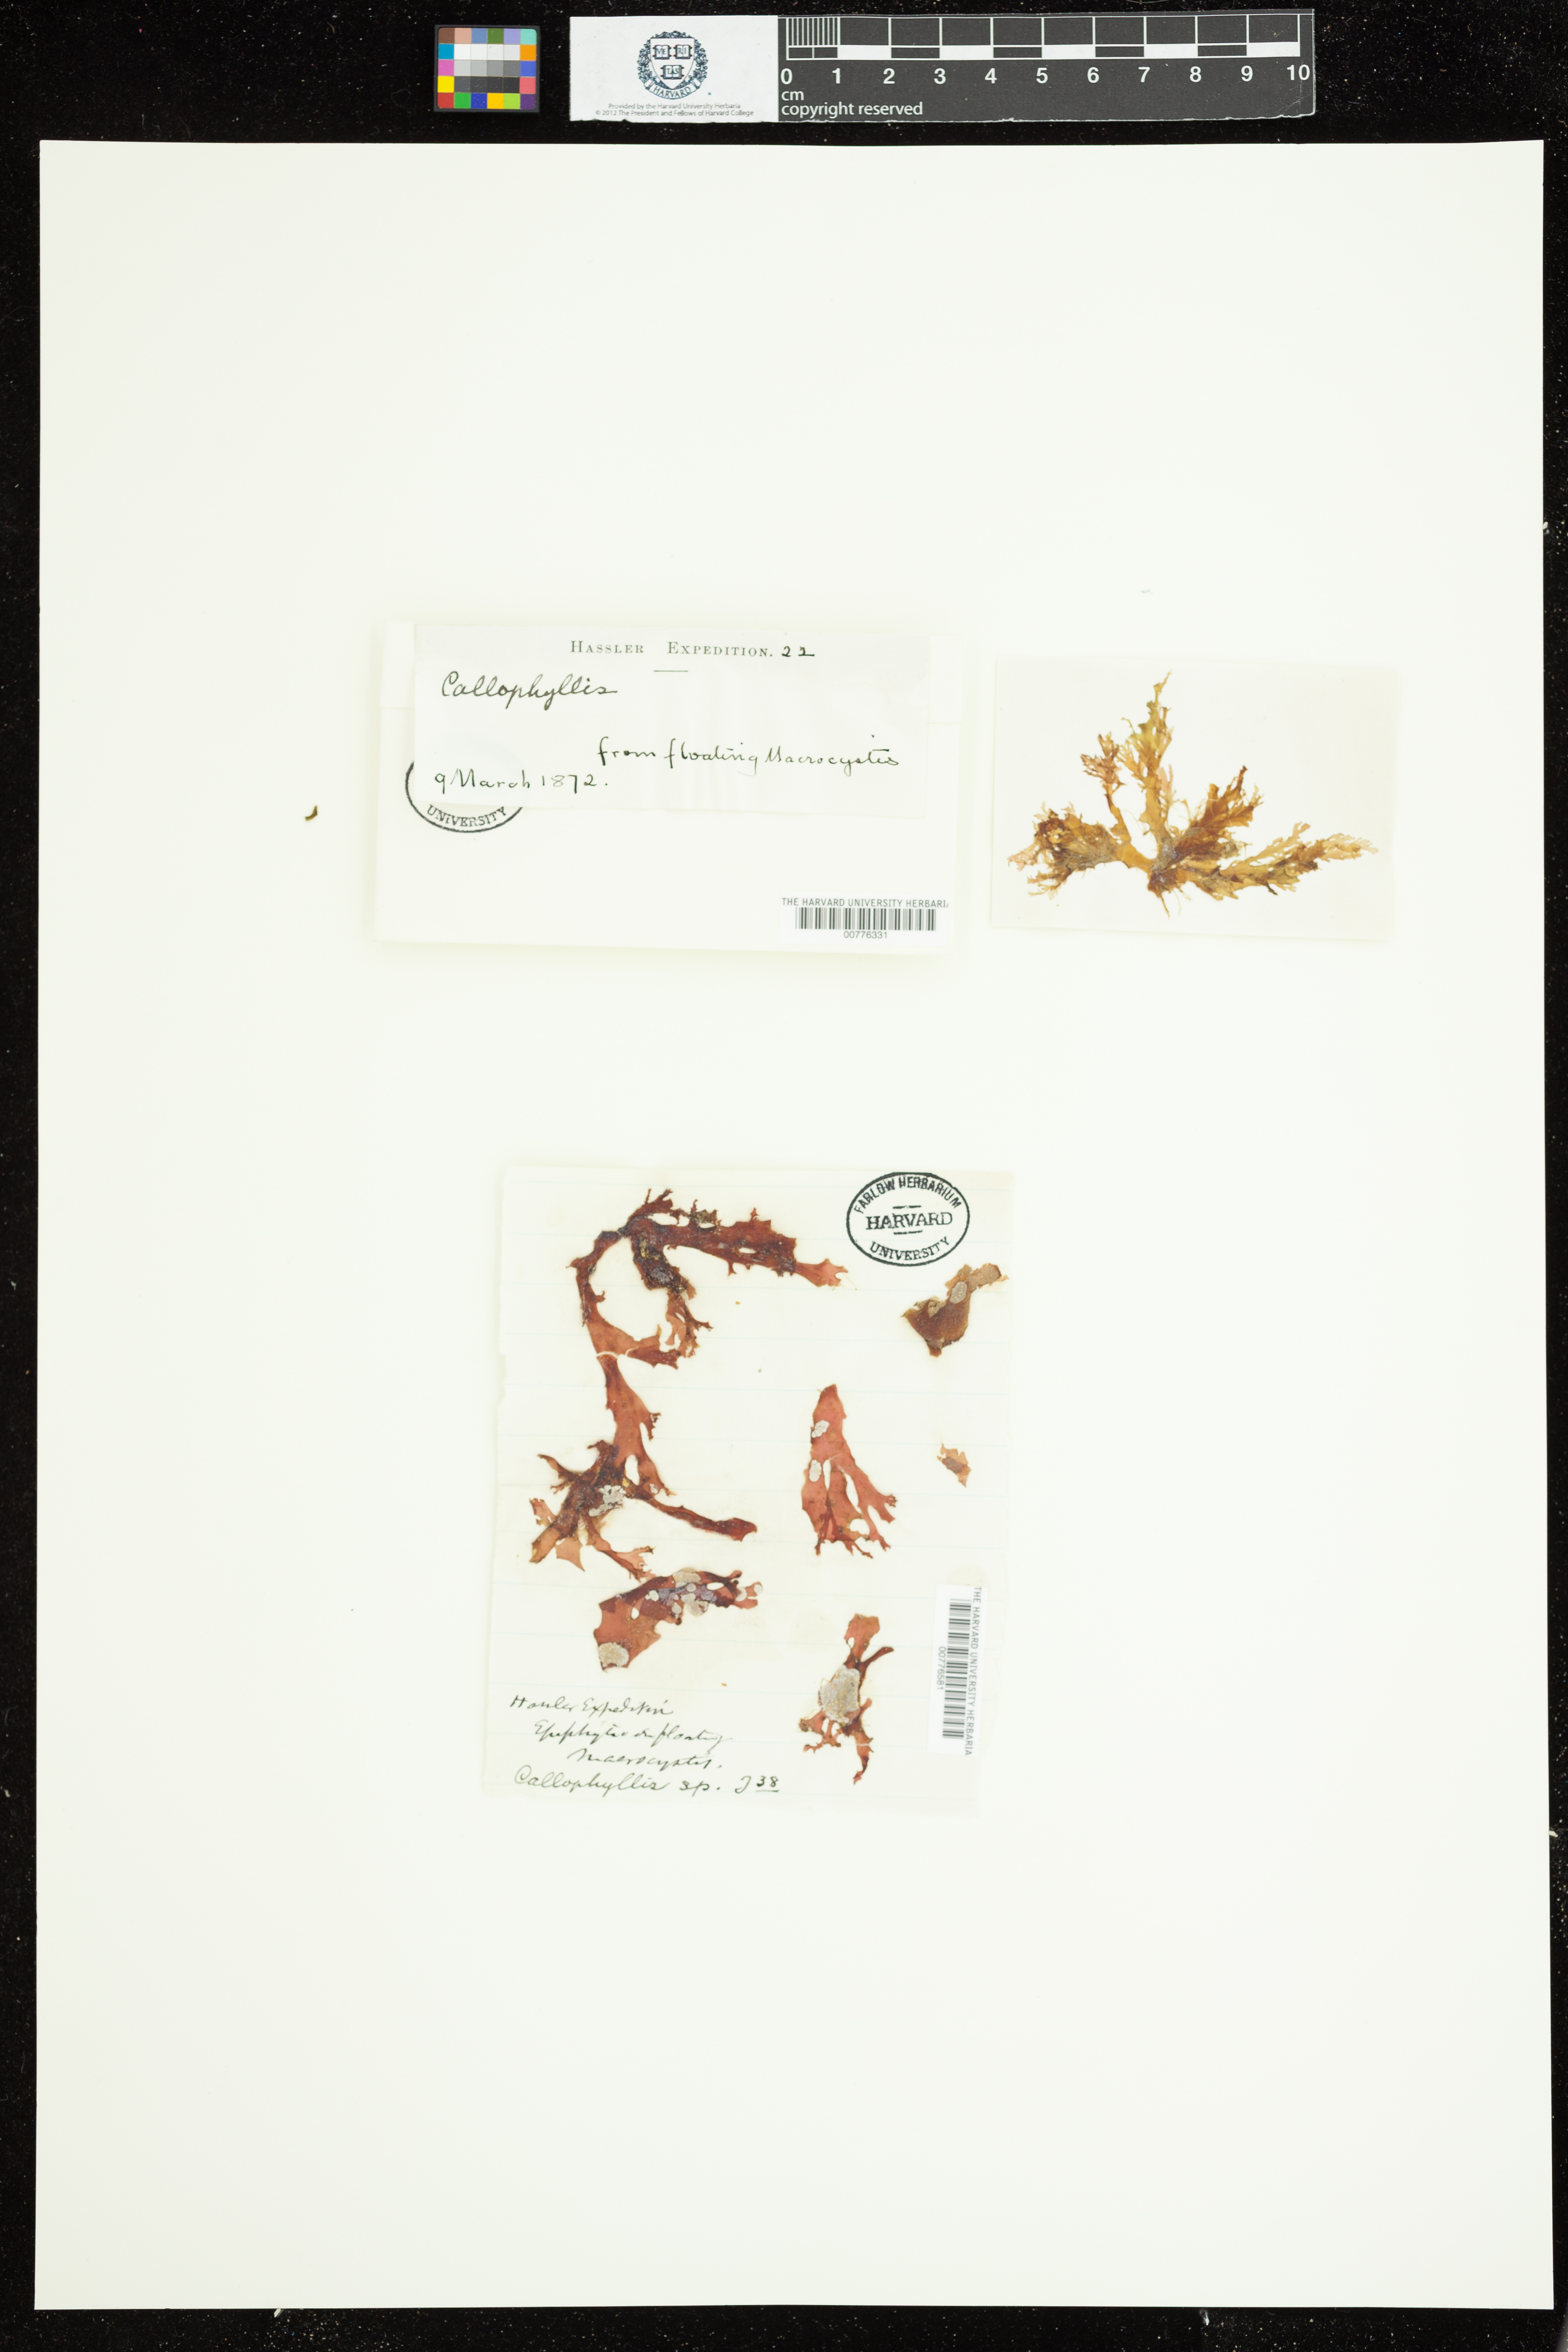 Callophyllis image